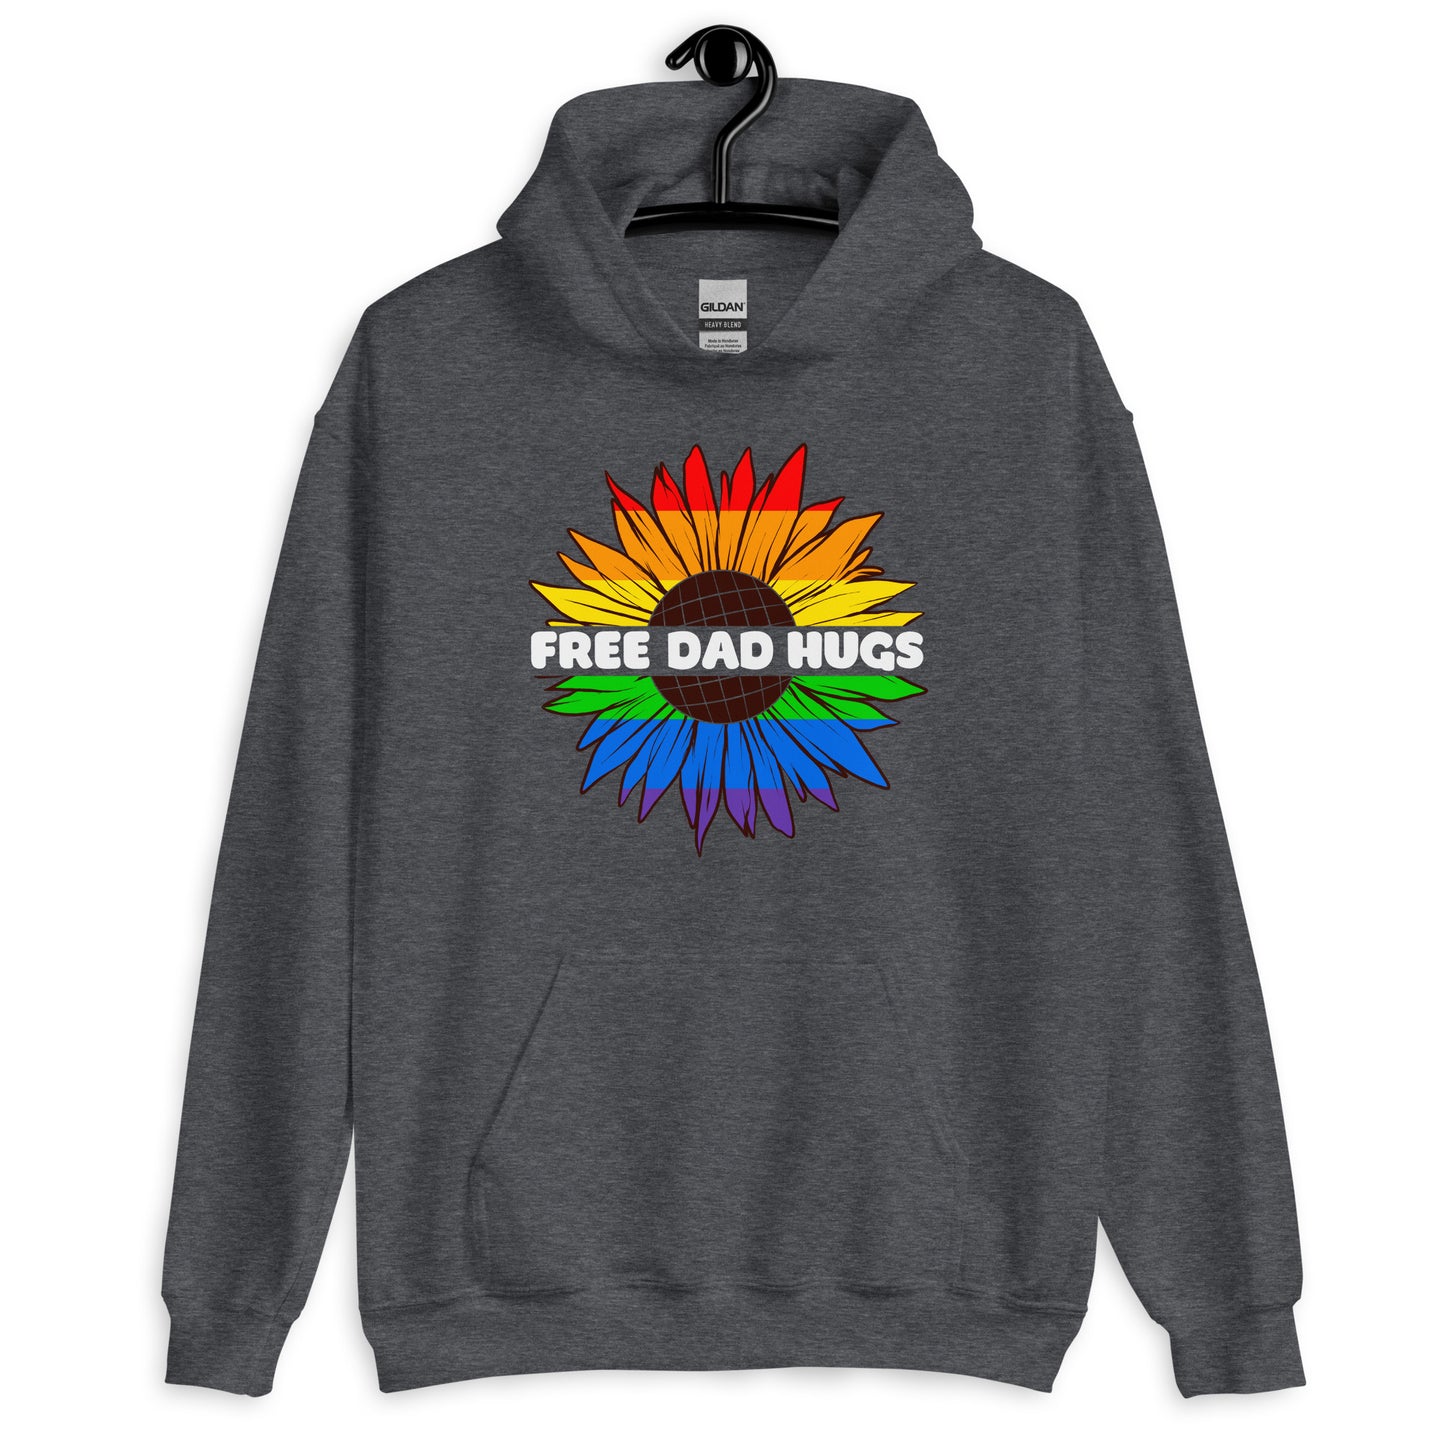 Free Dad Hugs Gay Pride Hoodie - gay pride apparel